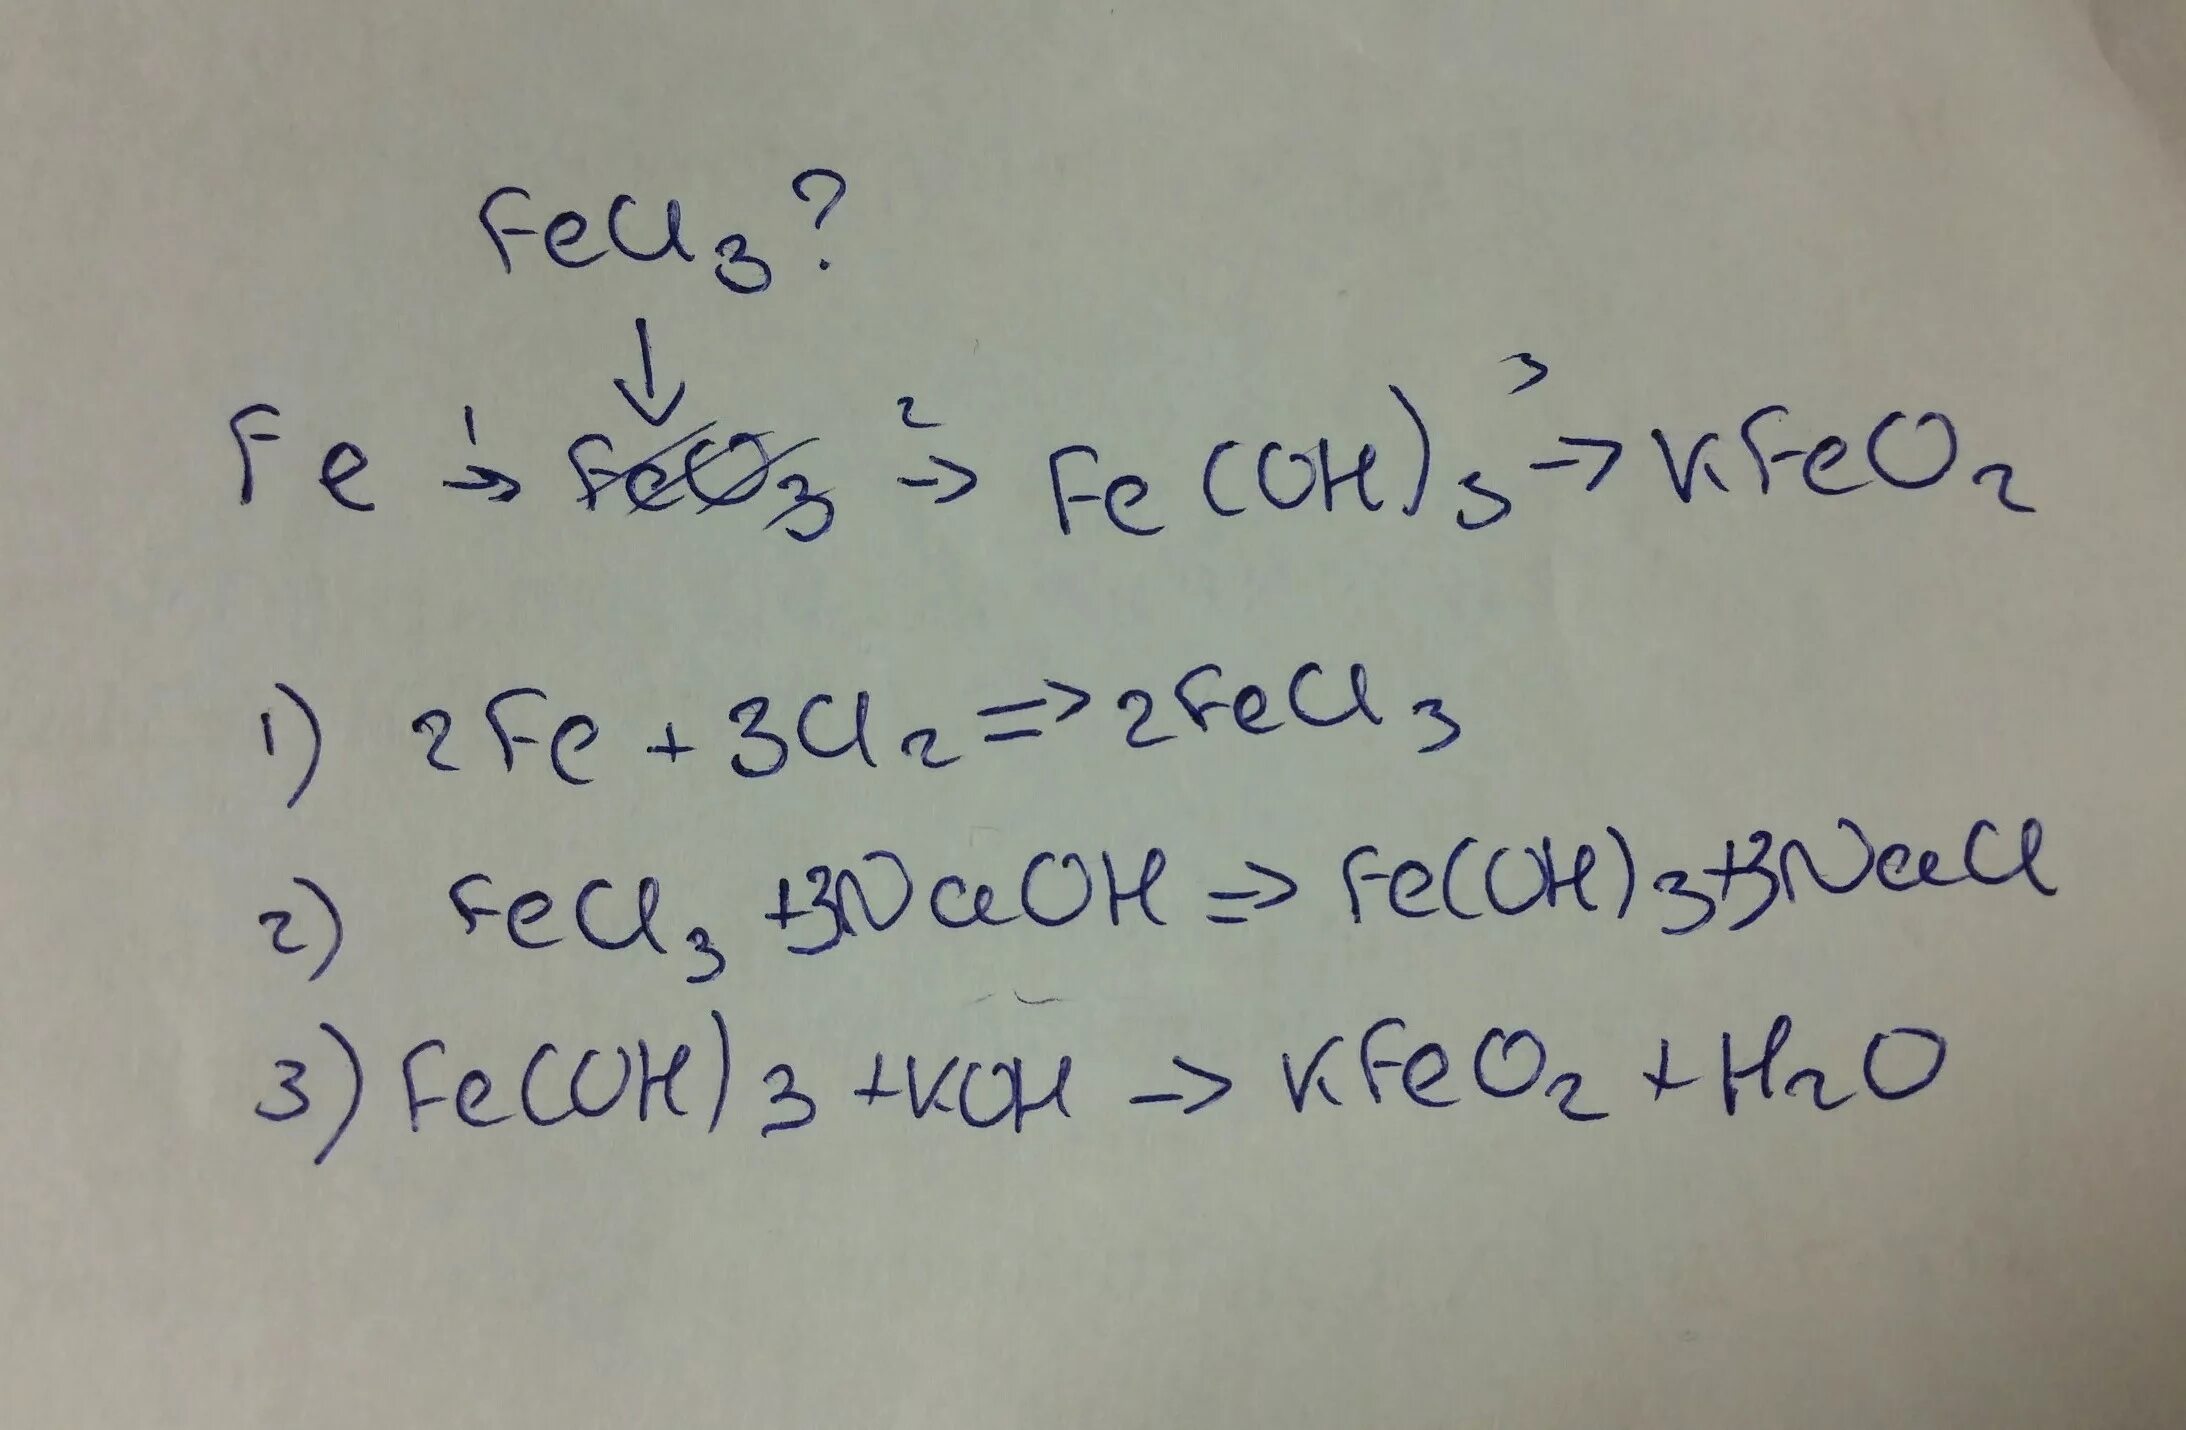 Fe feo hcl. Fe(Oh)3. Fe(Oh)3+feo. Fe + HCE-fece 3 + h 2. Fe Oh 3 kfeo2.